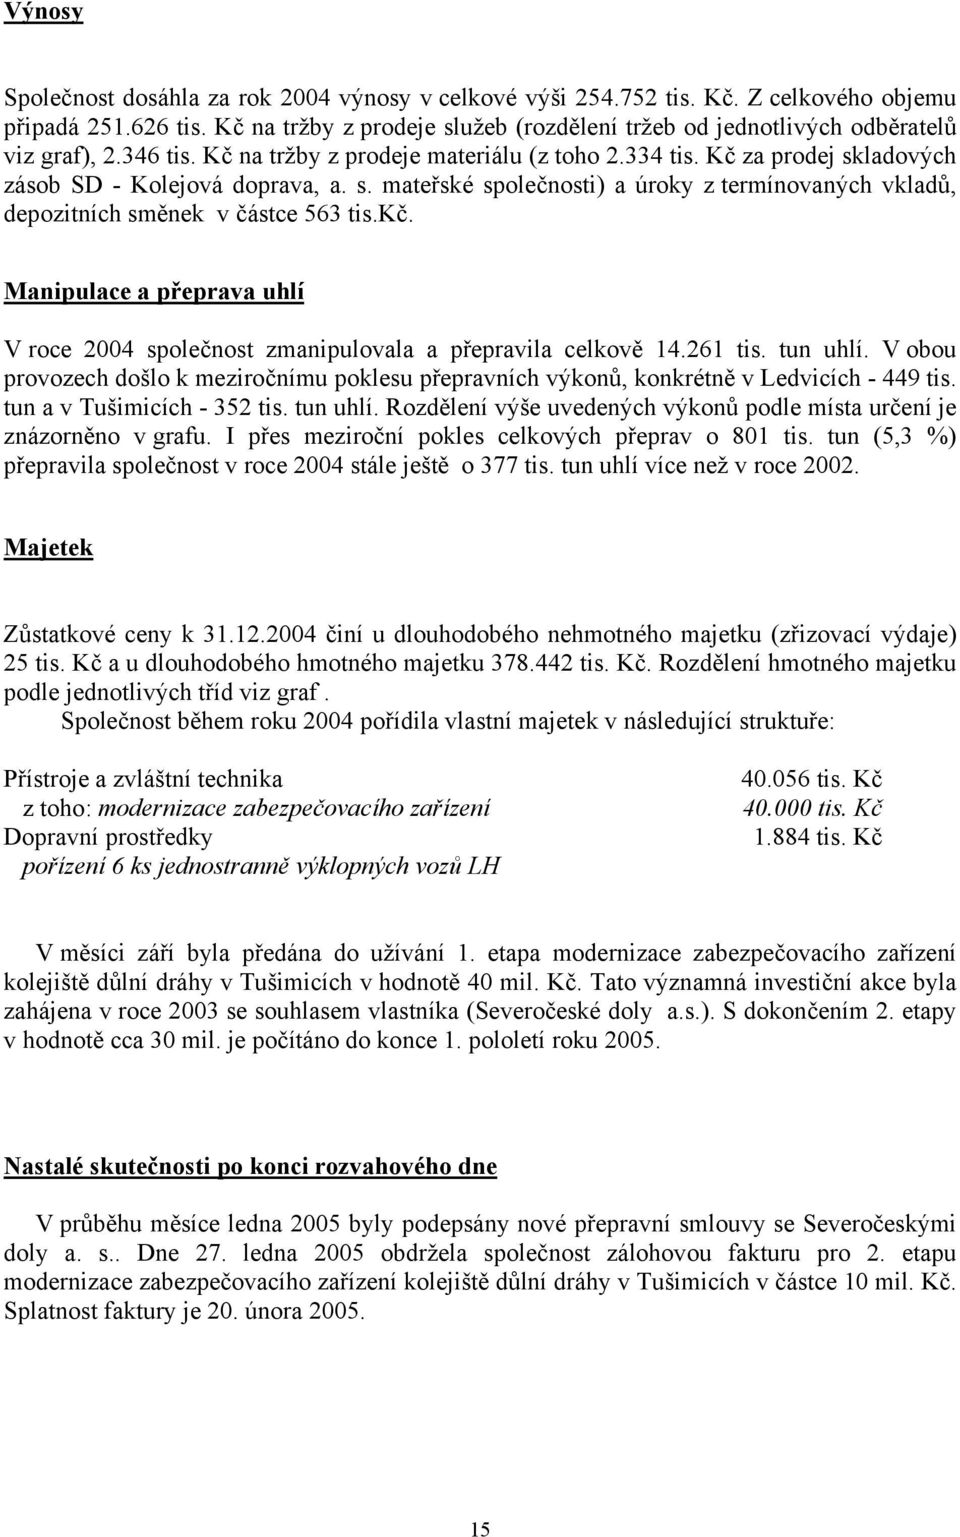 Kč za prodej skladových zásob SD - Kolejová doprava, a. s. mateřské společnosti) a úroky z termínovaných vkladů, depozitních směnek v částce 563 tis.kč.